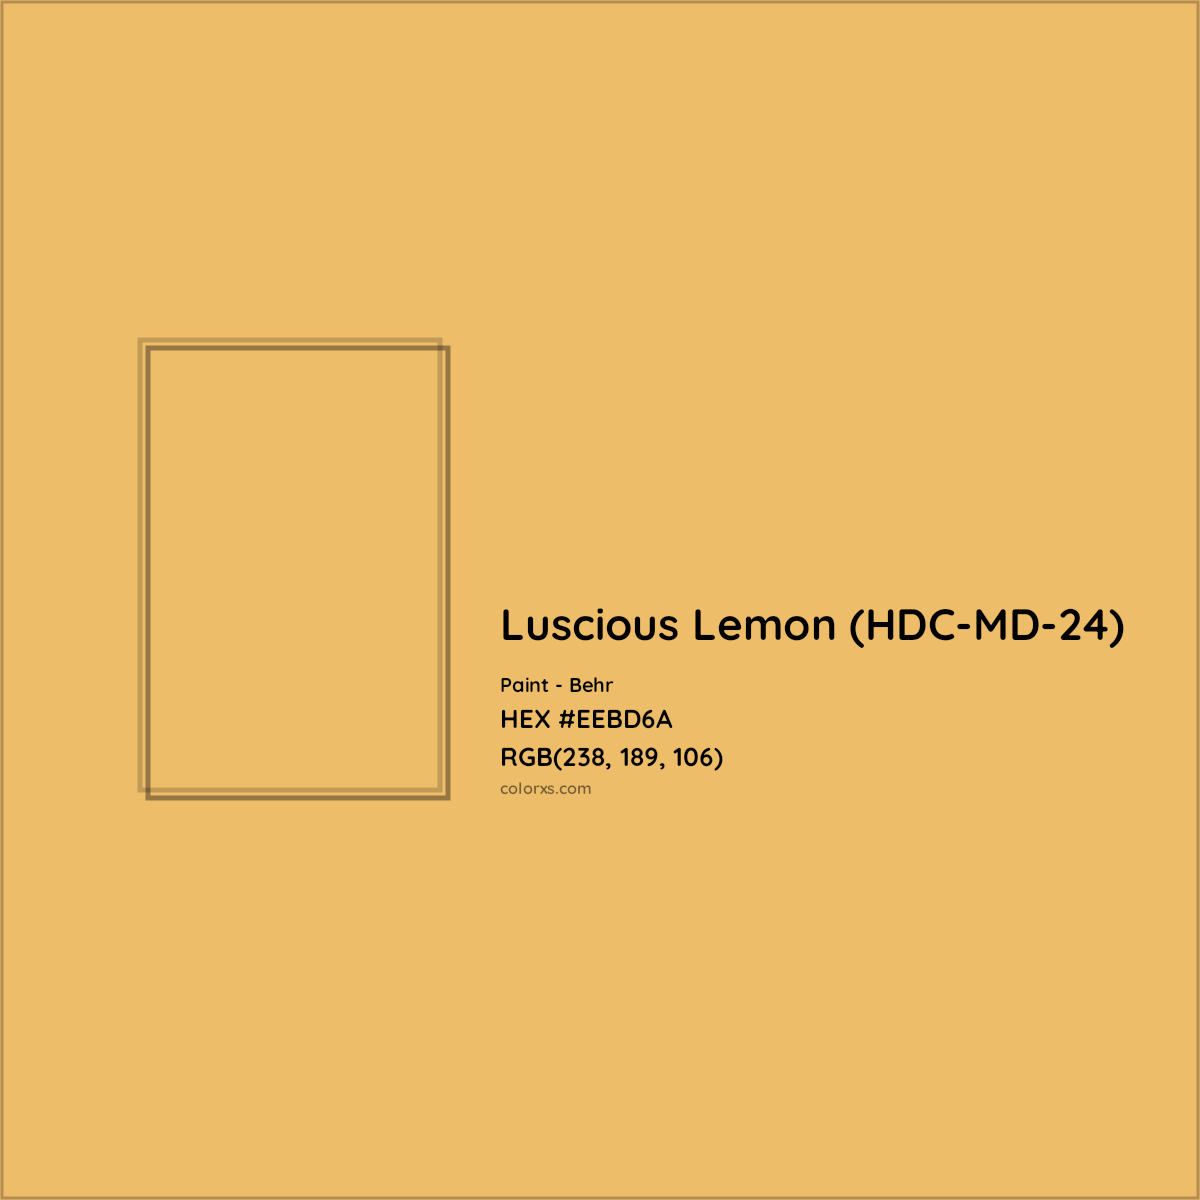 HEX #EEBD6A Luscious Lemon (HDC-MD-24) Paint Behr - Color Code